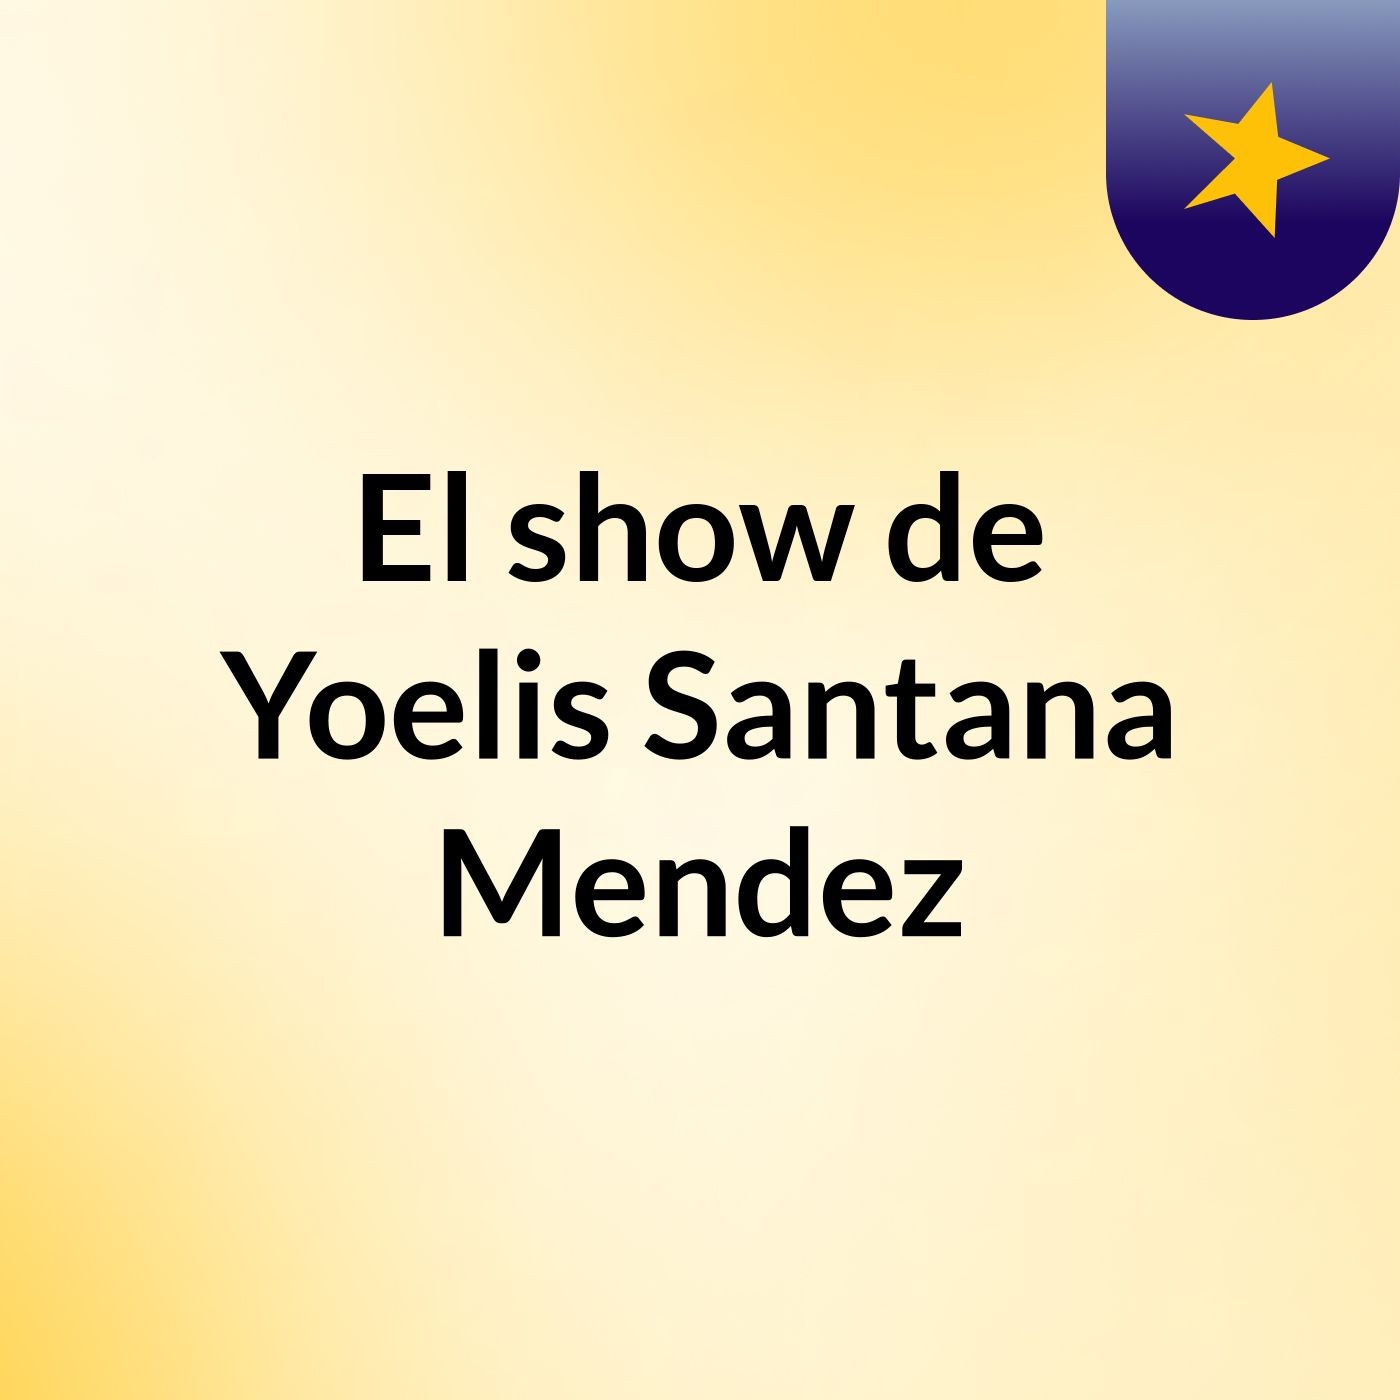 El show de Yoelis Santana Mendez